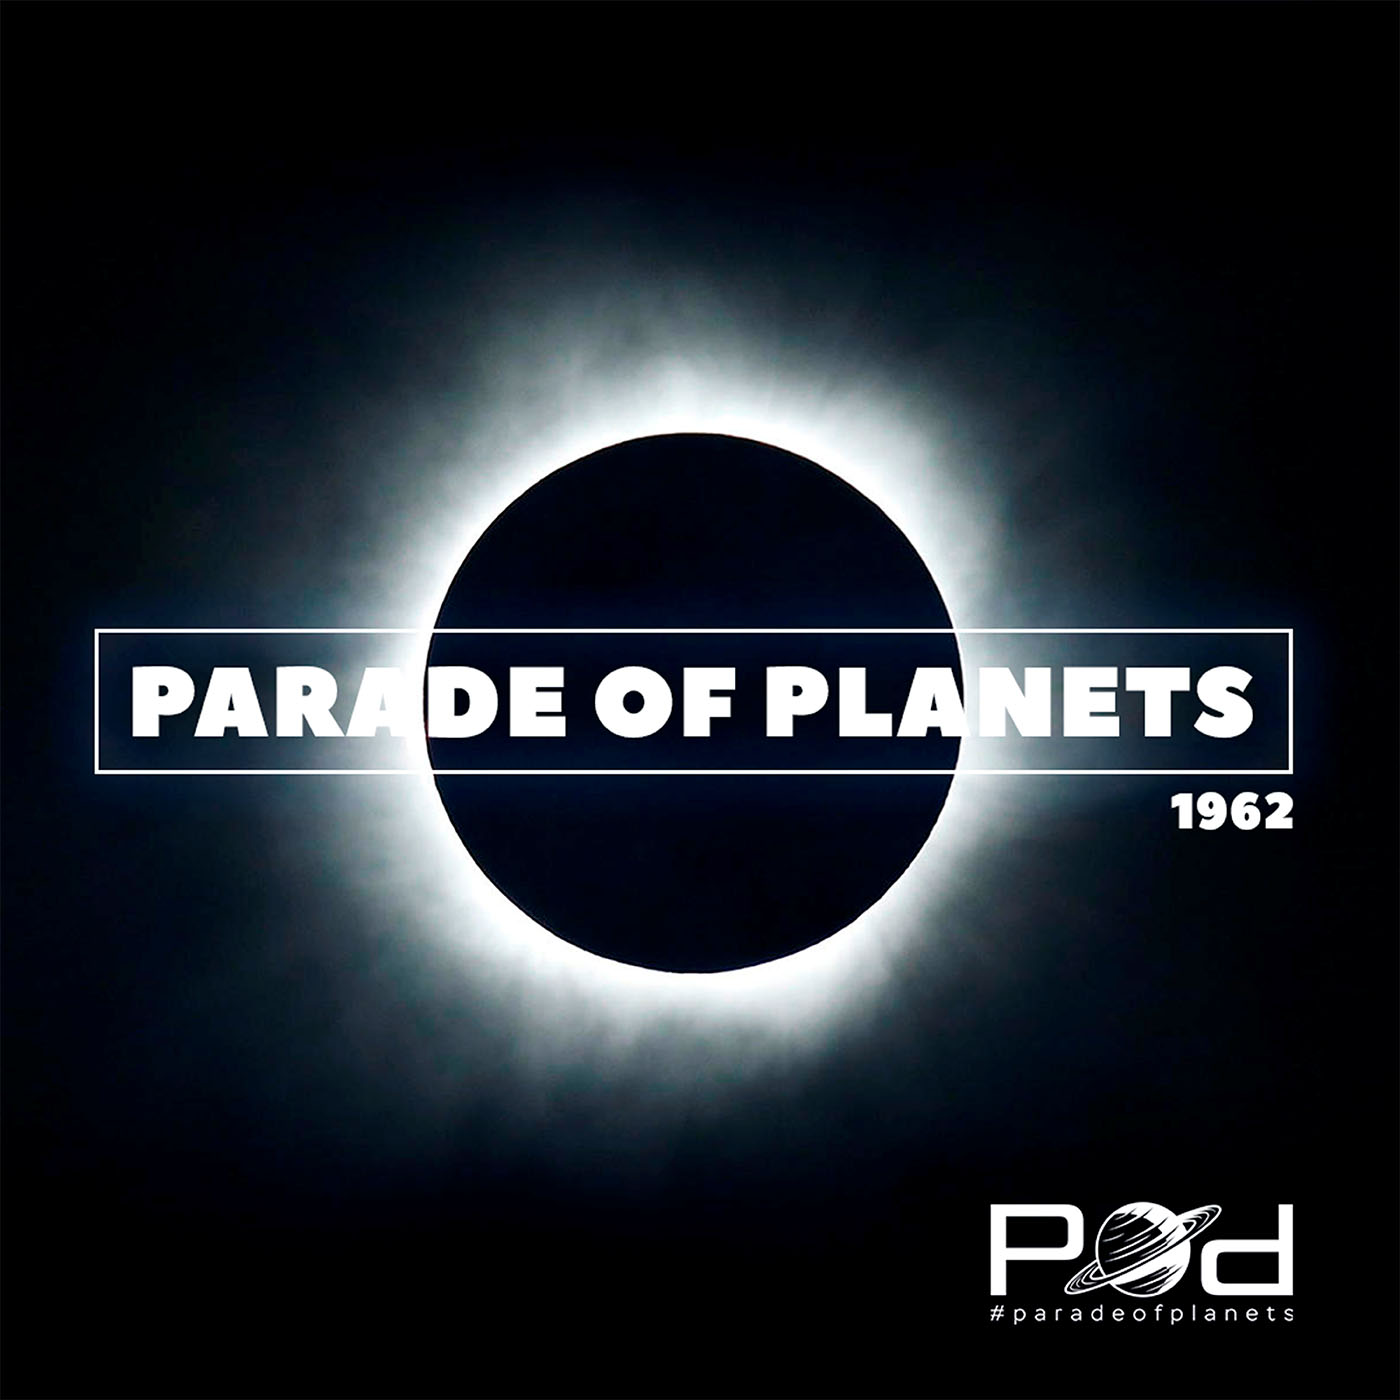 Parade of planets avec. Parade of Planets группа. Parade of Planets солистка. Parade of Planets певица.